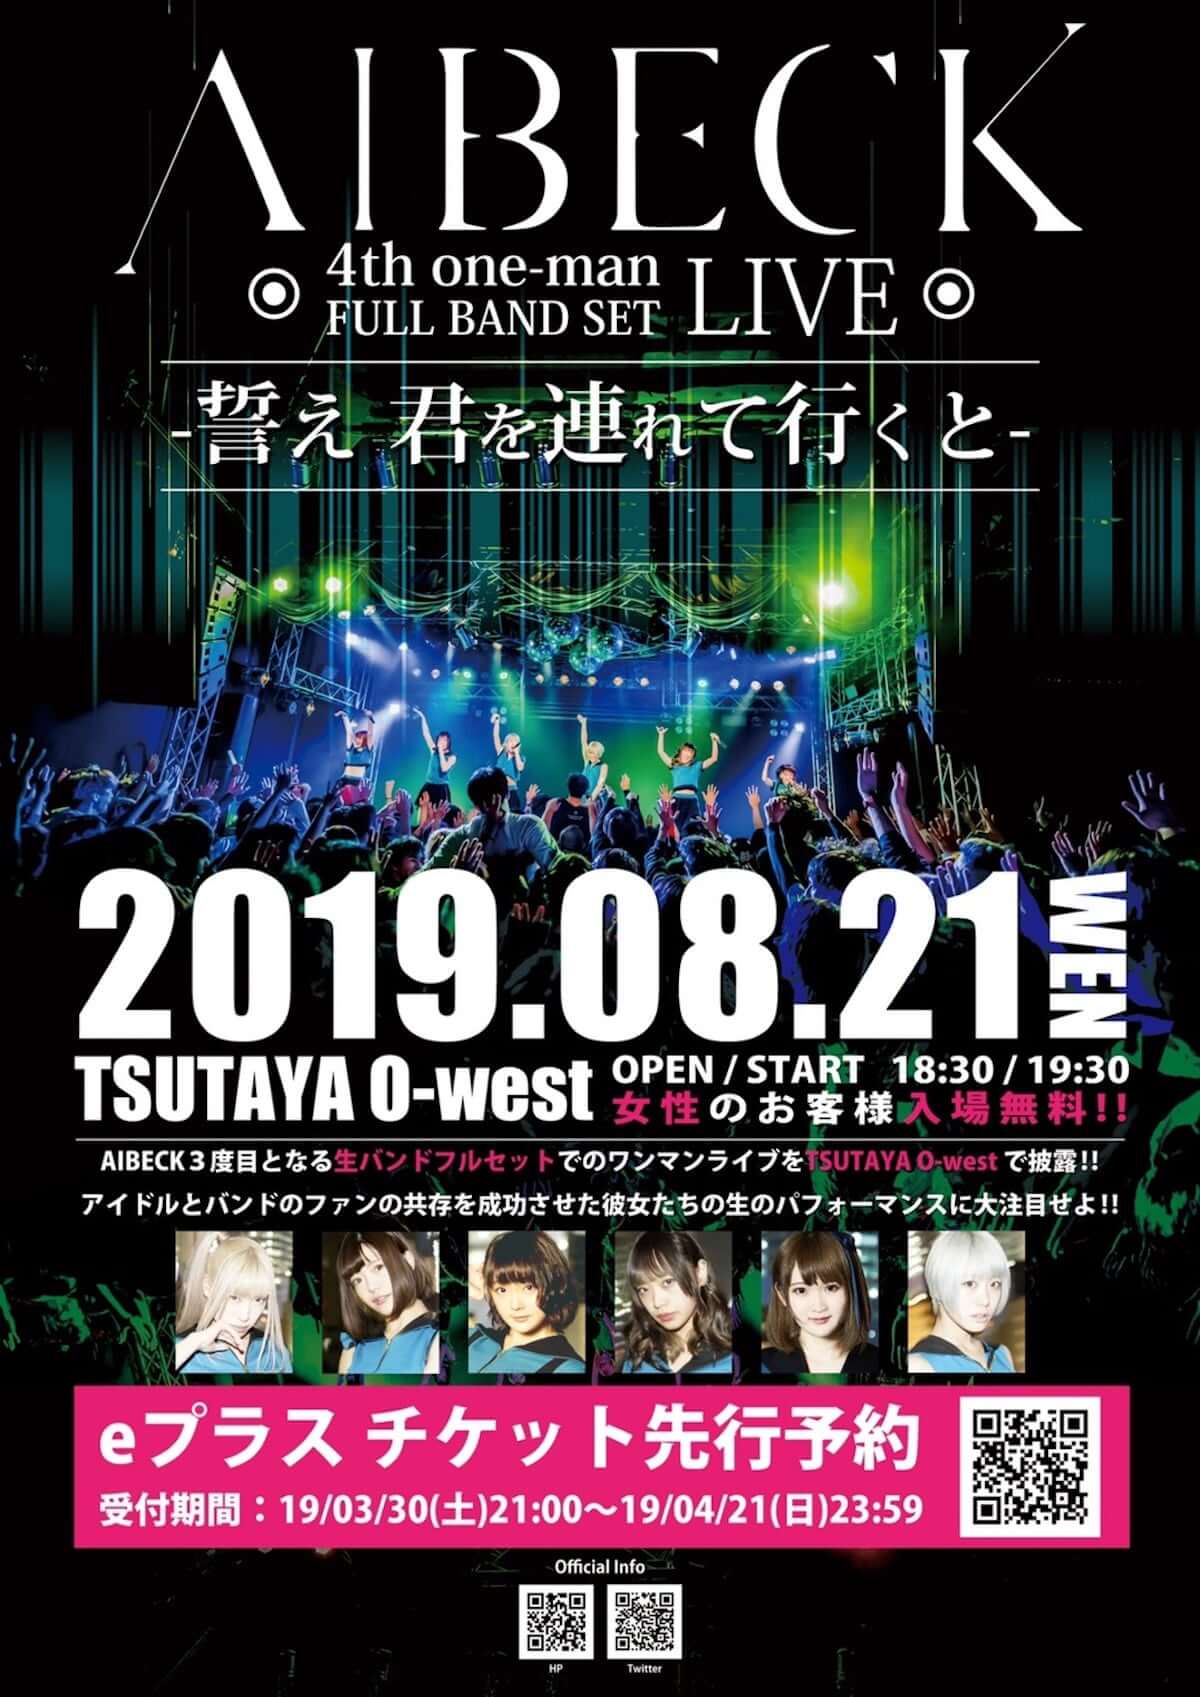 現在東名阪ワンマンツアー敢行中のAIBECK、8月にTSUTAYA O-WESTにてワンマンライブ開催決定 music190327_aibeck_1-1200x1697